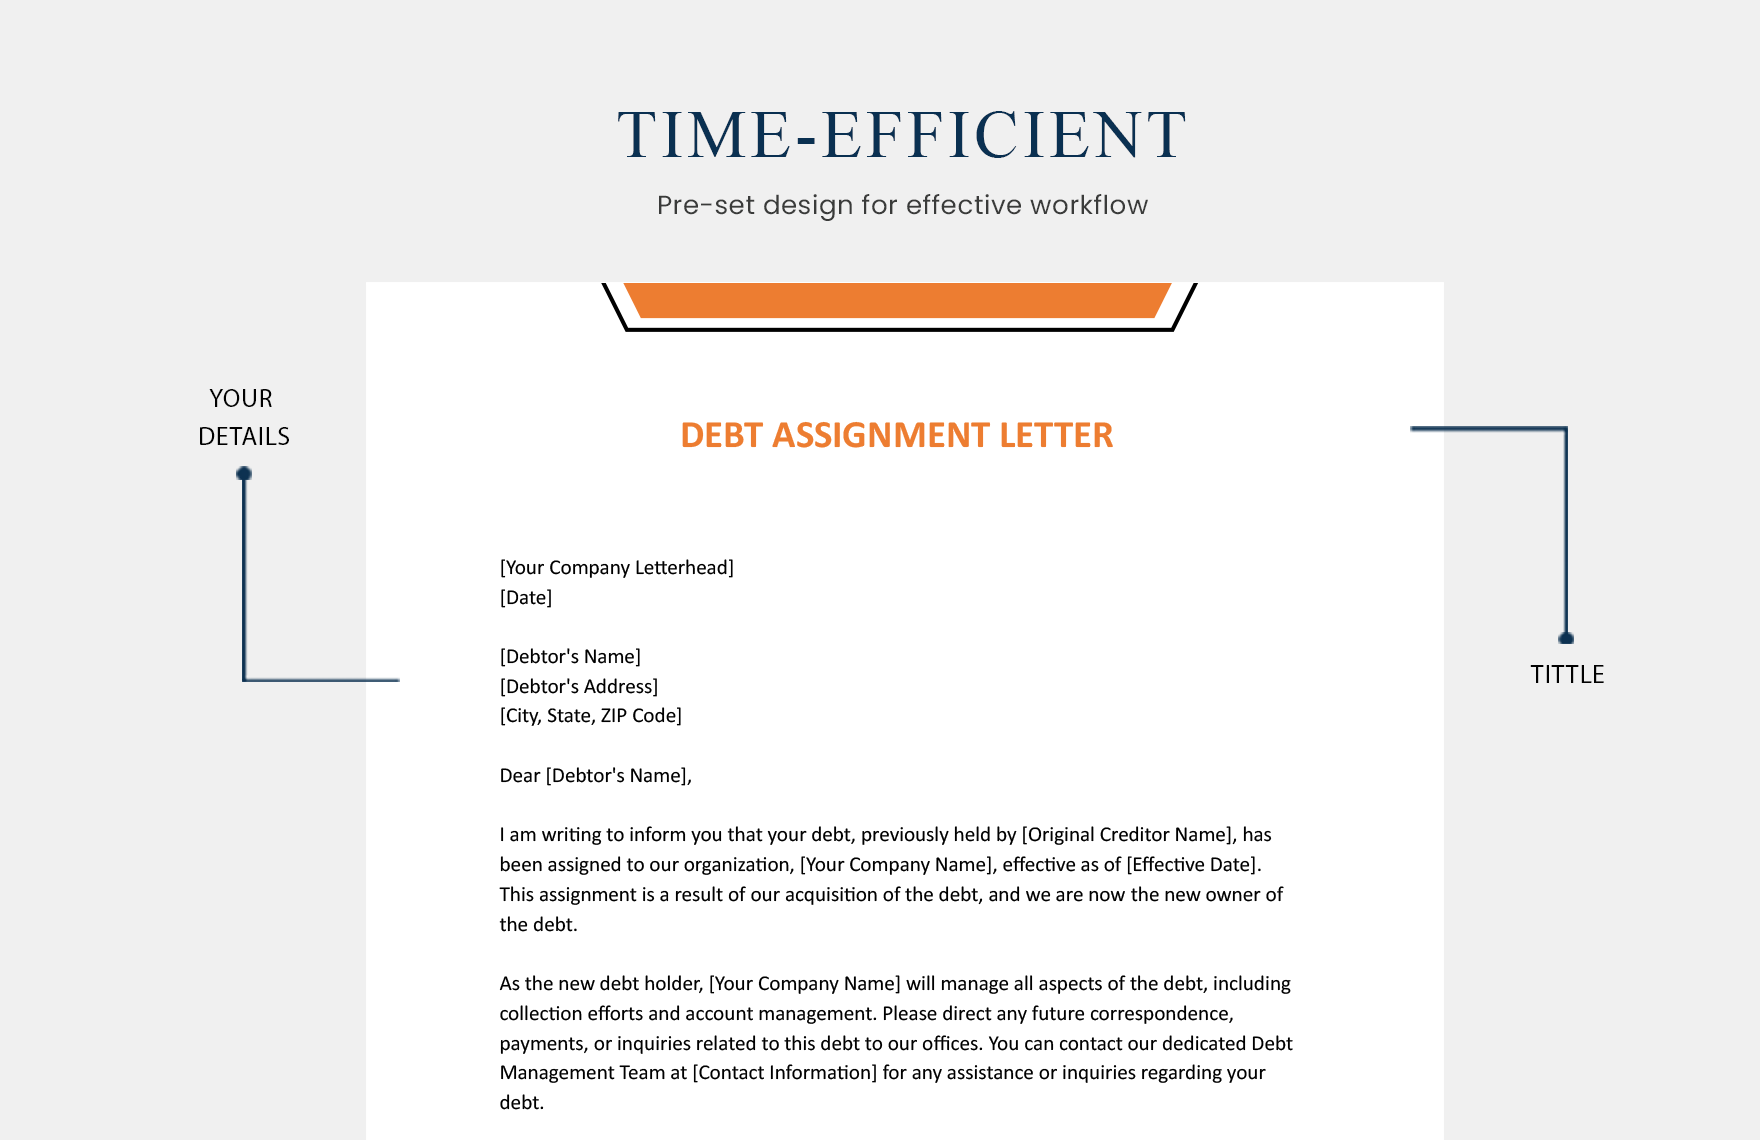 Debt Assignment Letter